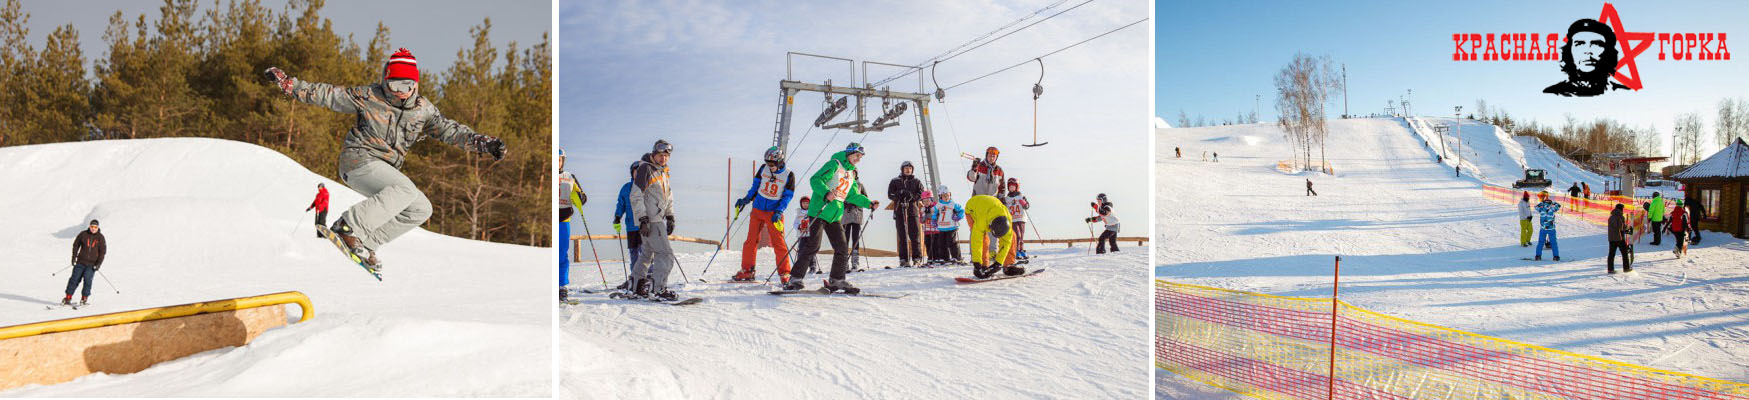 Скидка 50% на катание на сноуборде или лыжах + подъемы в ГК «Красная горка». 